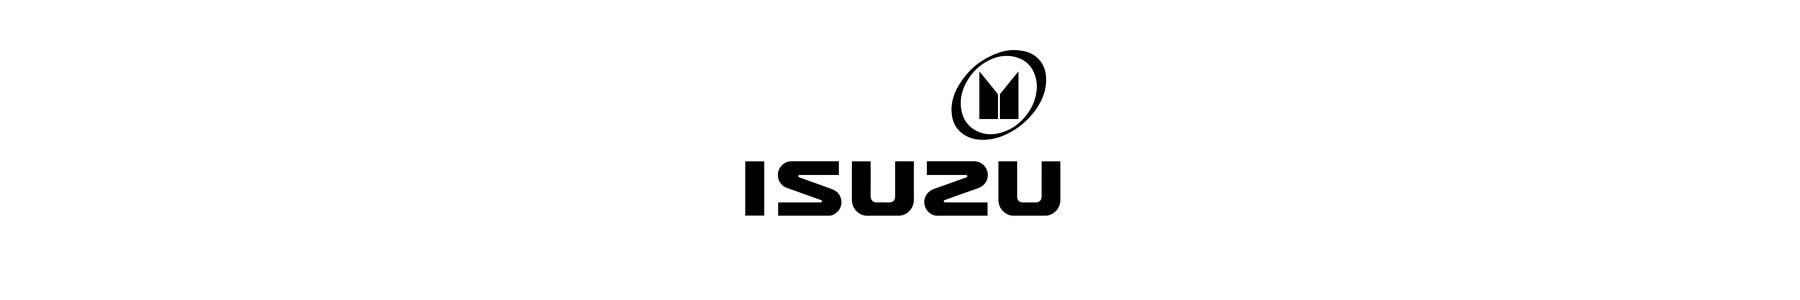 22H22 - Equipement et accessoires pour véhicule ISUZU disponibles sur notre site web